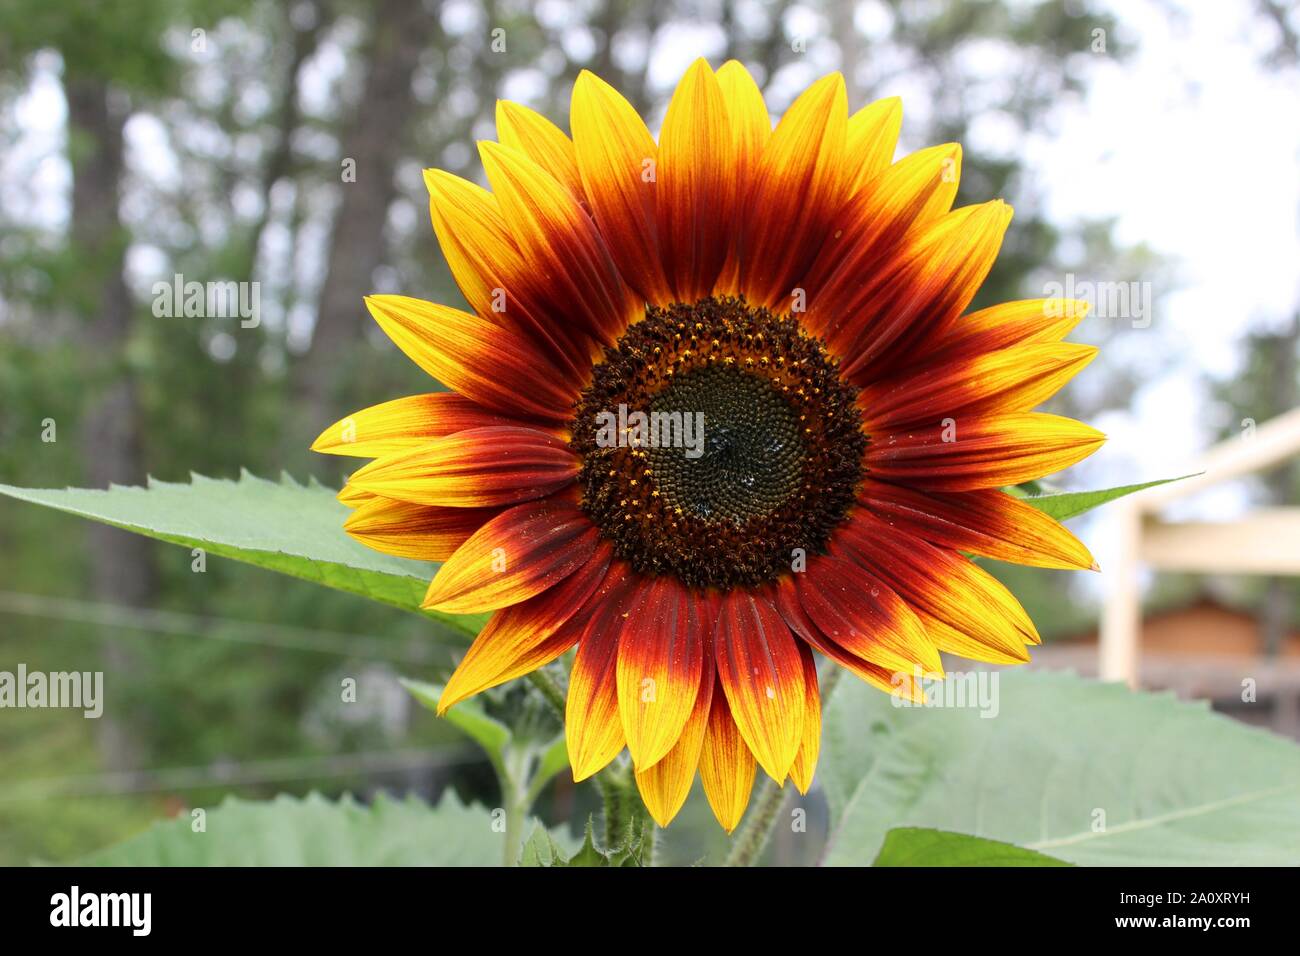 An Autumn Sunflower Stock Photo